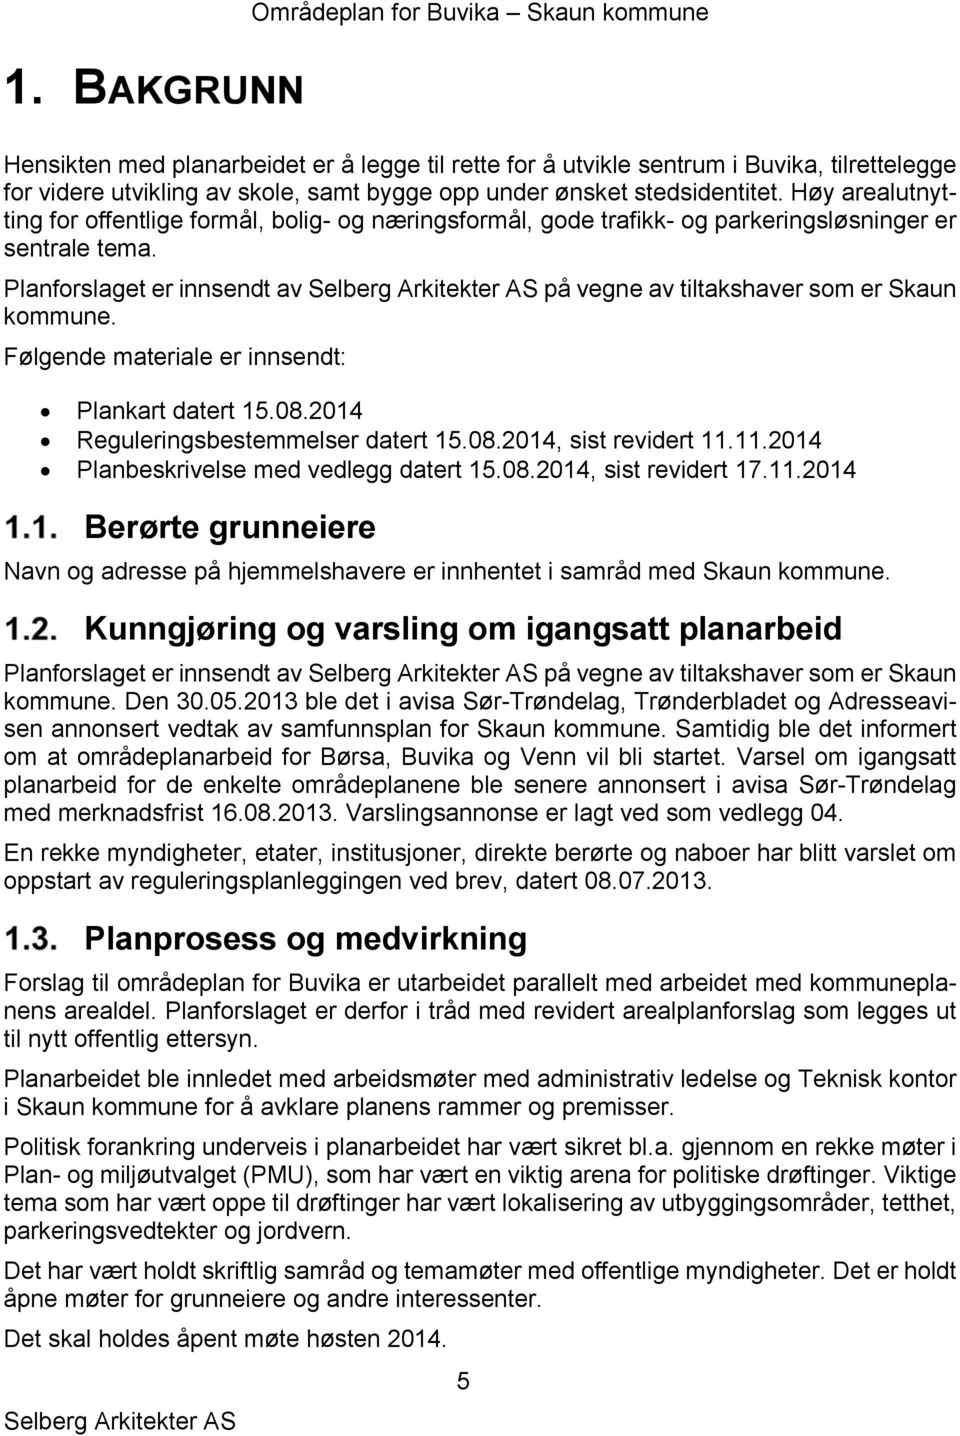 Planforslaget er innsendt av på vegne av tiltakshaver som er Skaun kommune. Følgende materiale er innsendt: Plankart datert 15.08.2014 Reguleringsbestemmelser datert 15.08.2014, sist revidert 11.